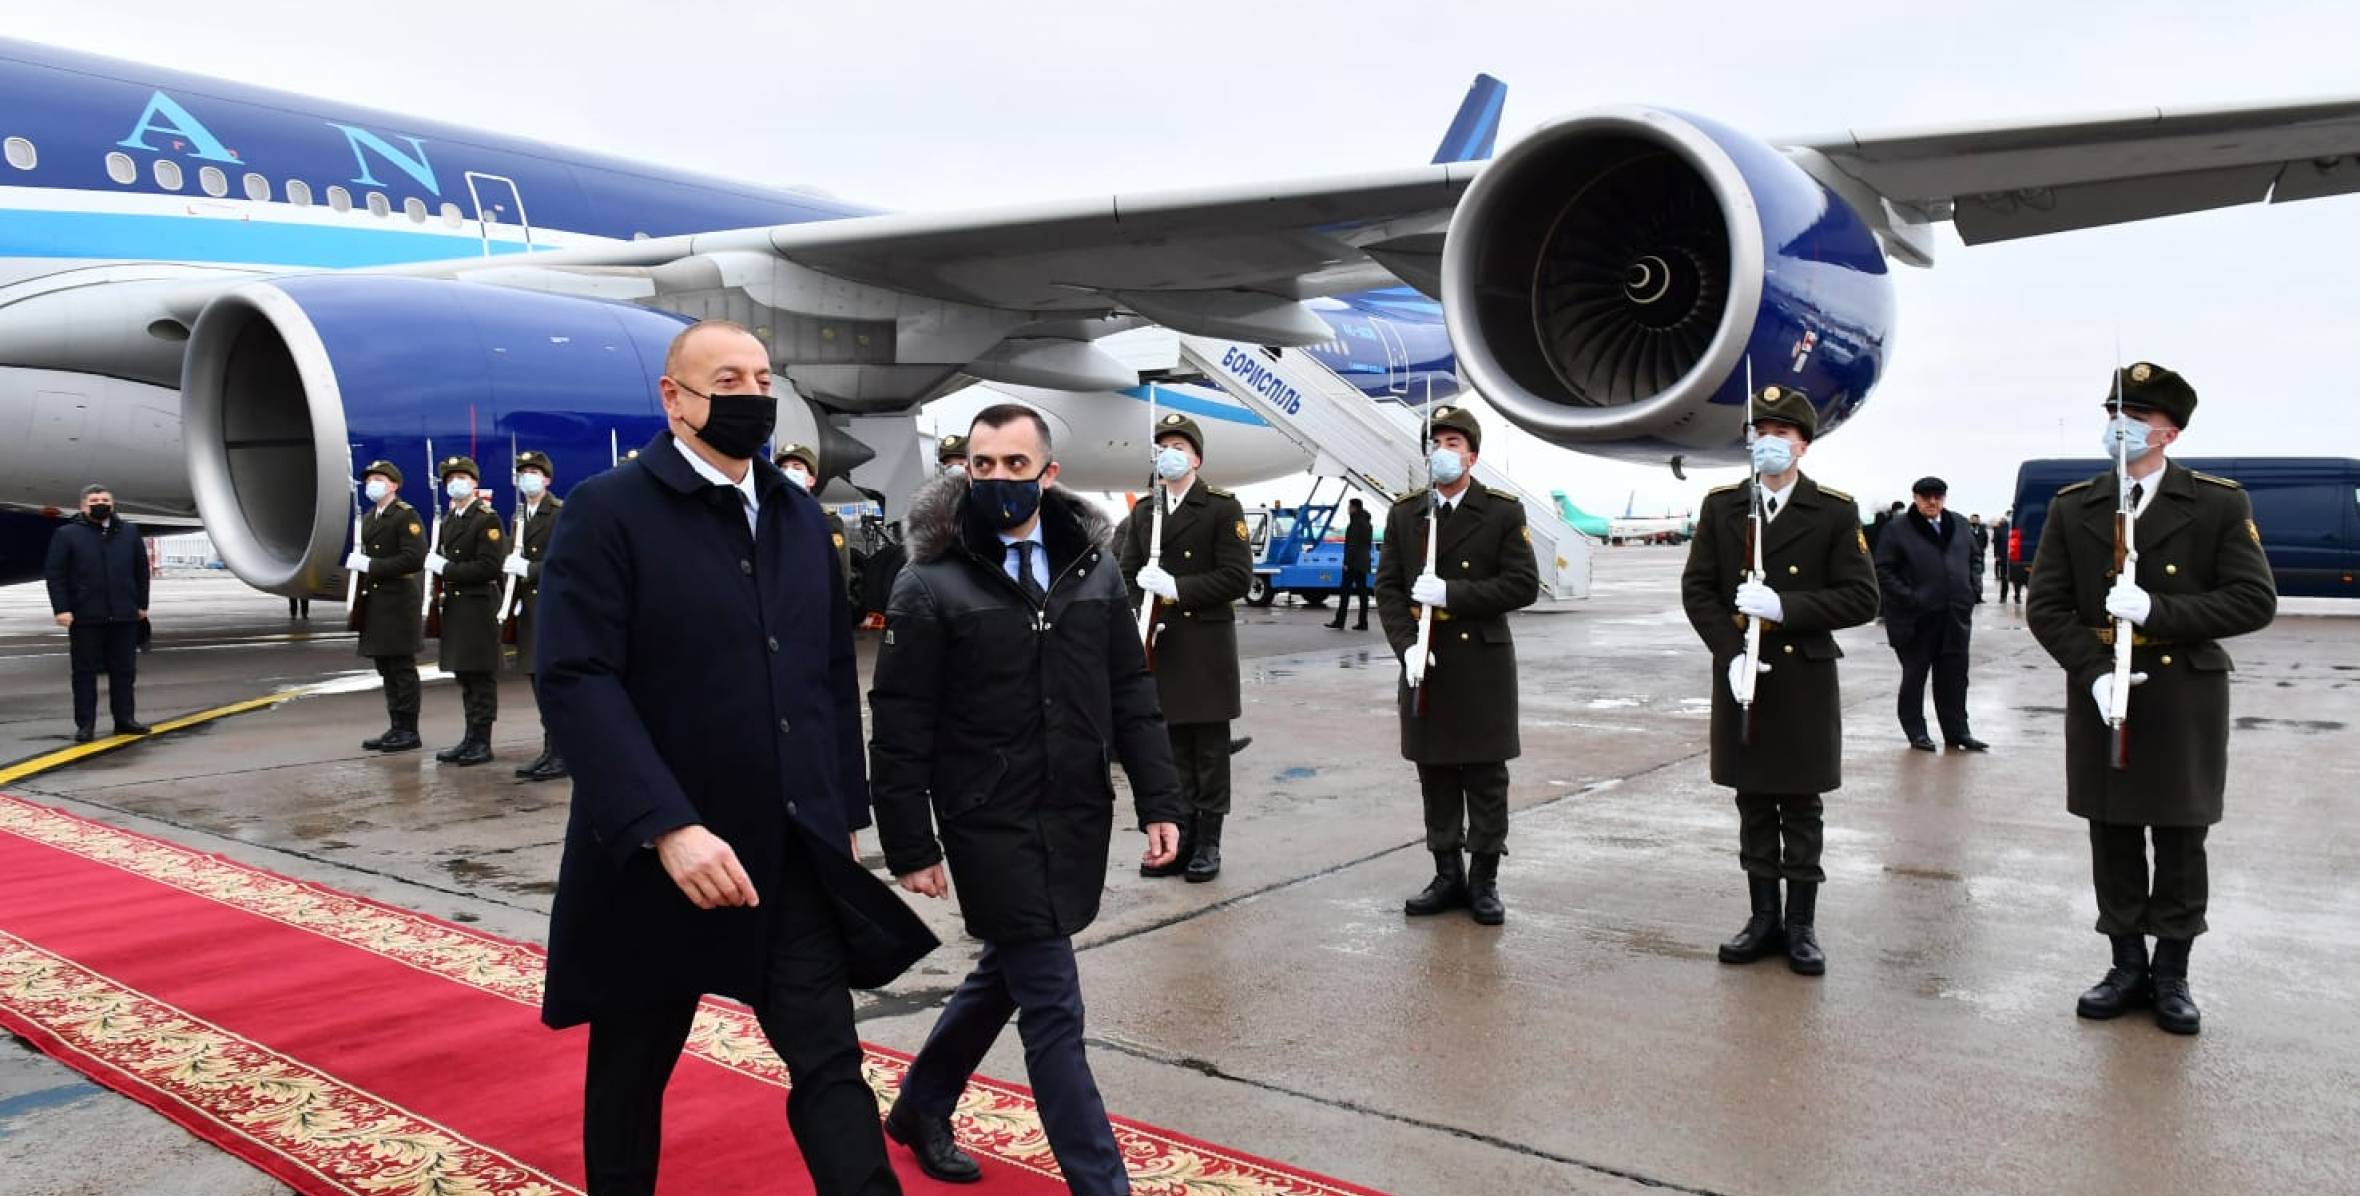 İlham Aliyev çalışma ziyareti için Ukrayna’ya geldi